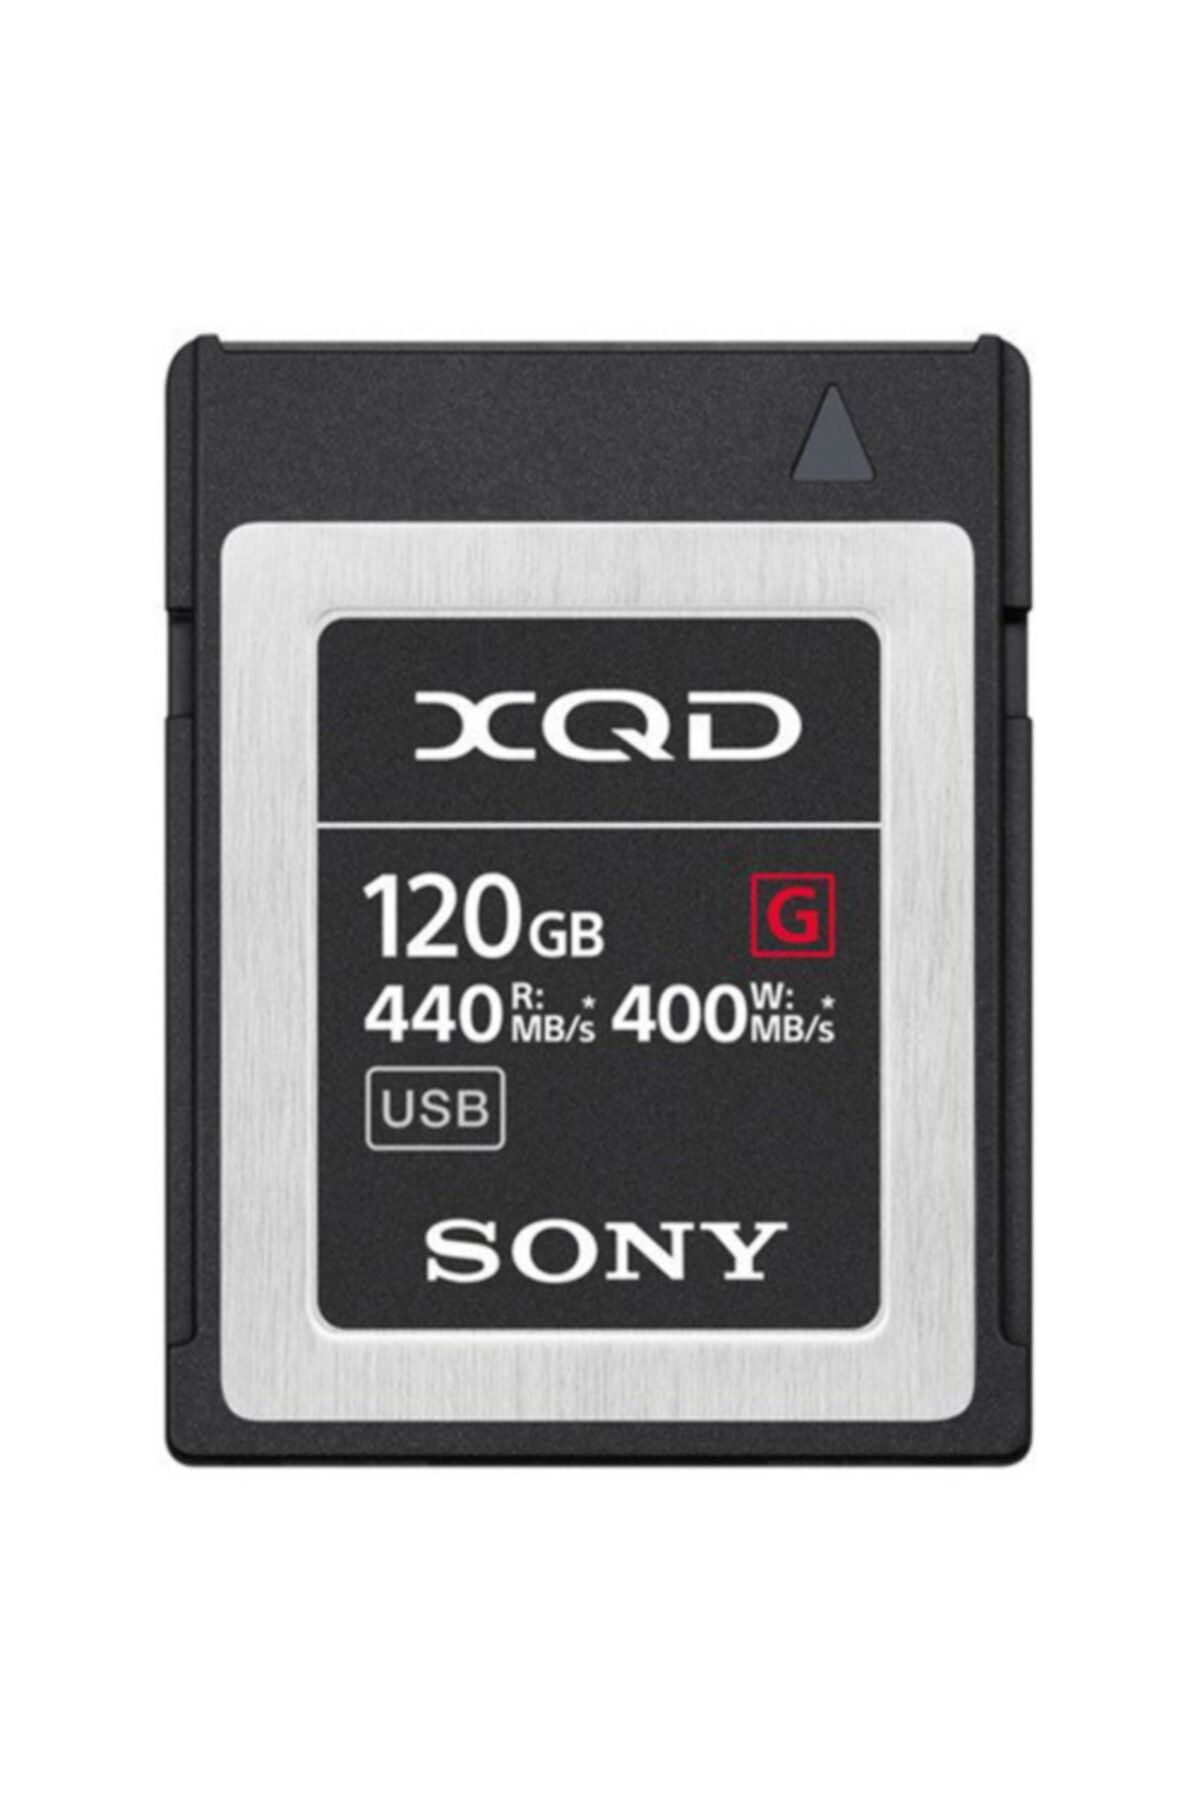 Sony 120gb G Series Xqd 440mb/s Hafıza Kartı